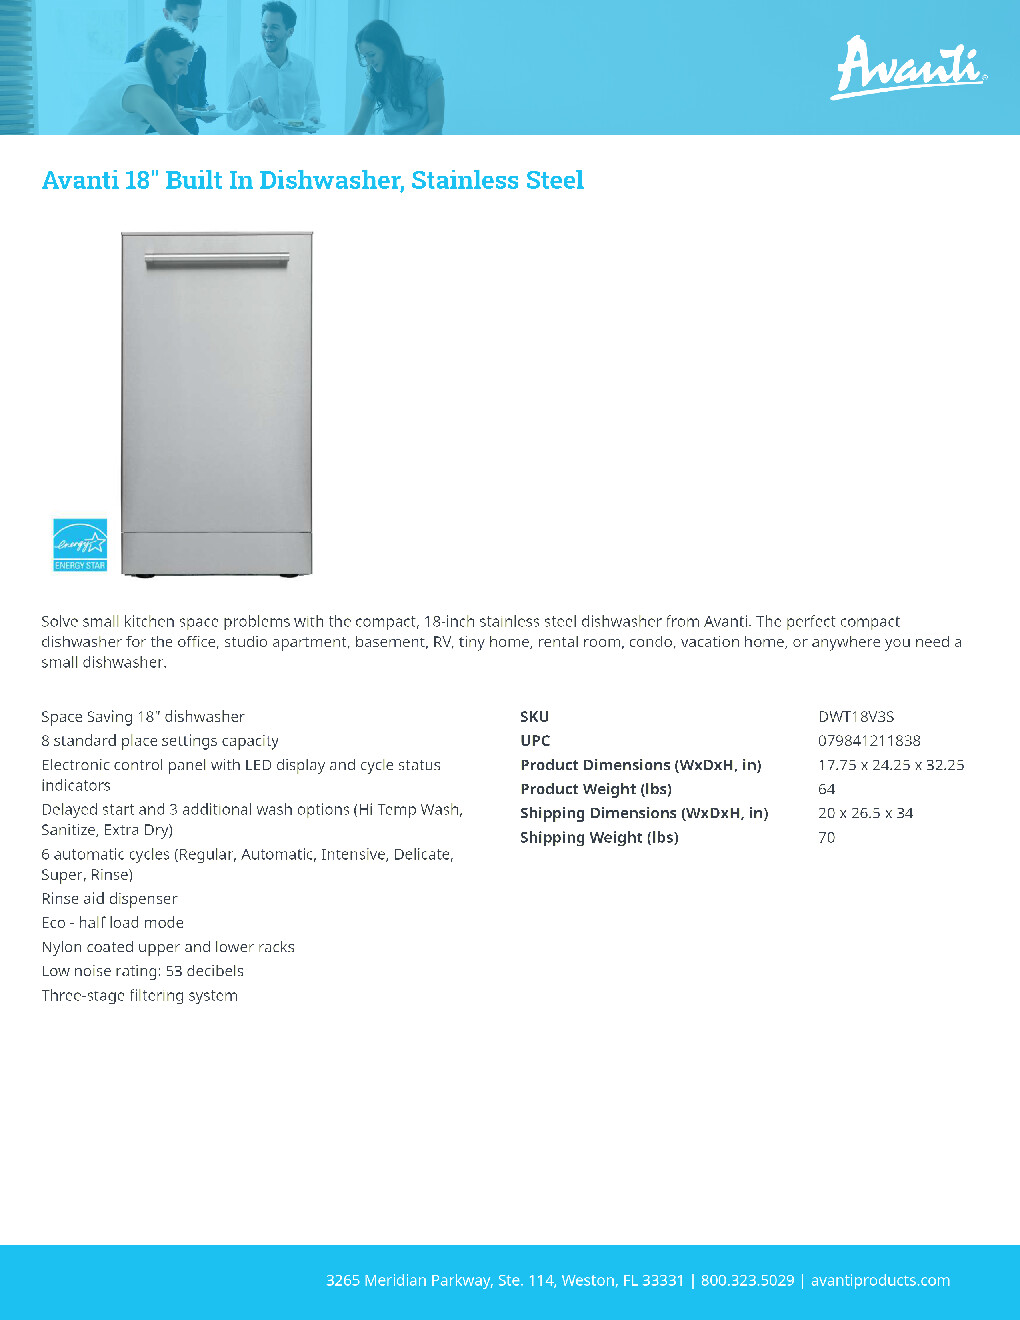 Avanti DWT18V3S Residential Dishwasher